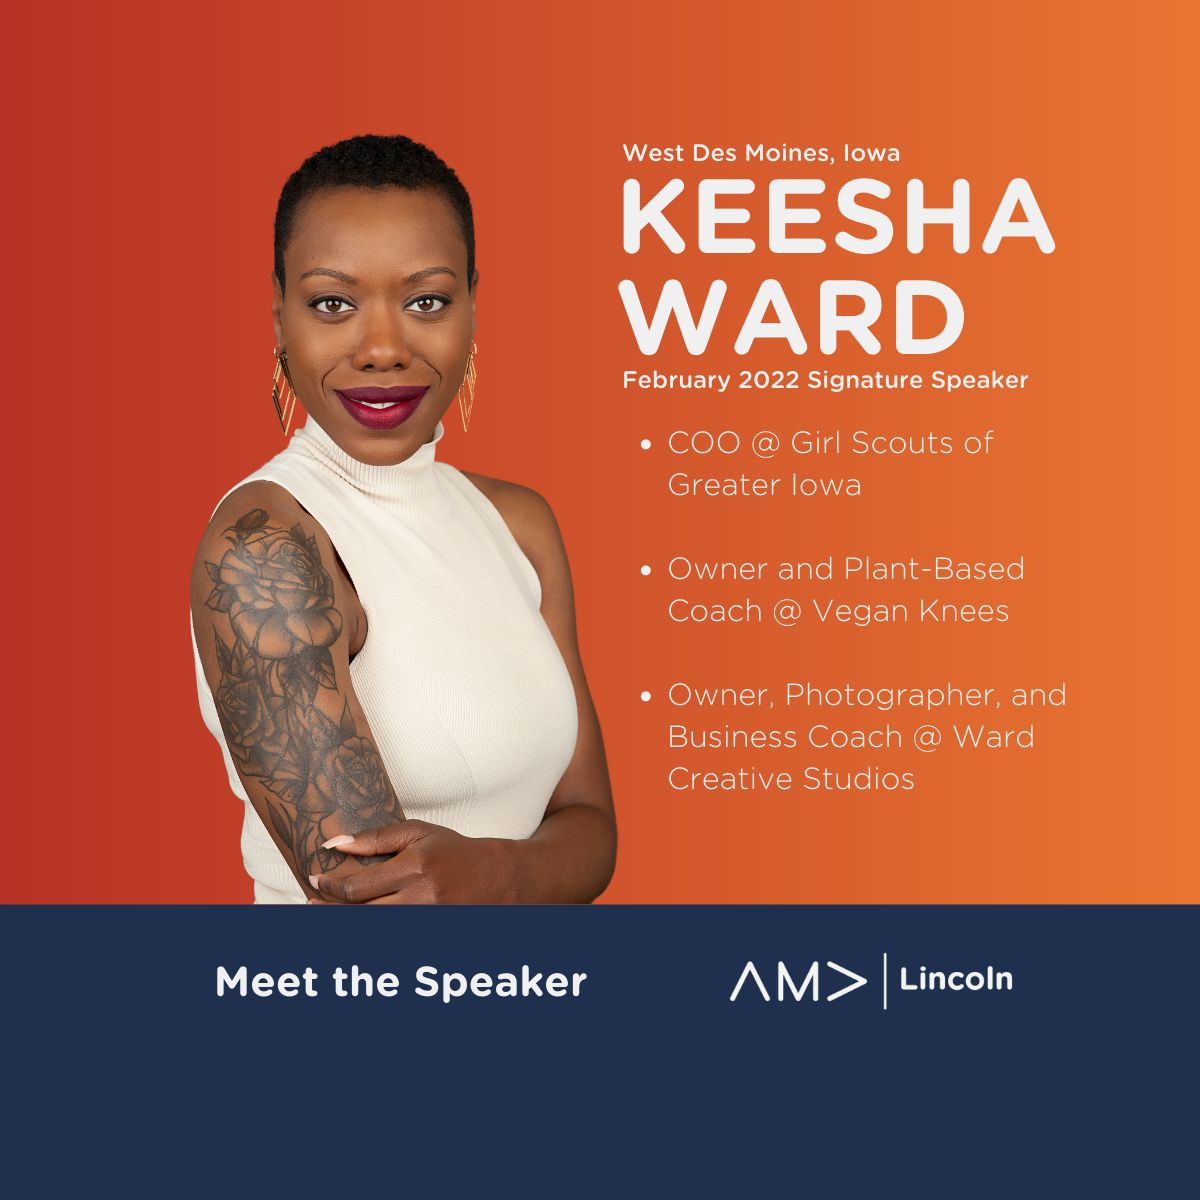 LaShawn Smith on LinkedIn: 👏🏾 Congratulations Keesha Ward, MBA